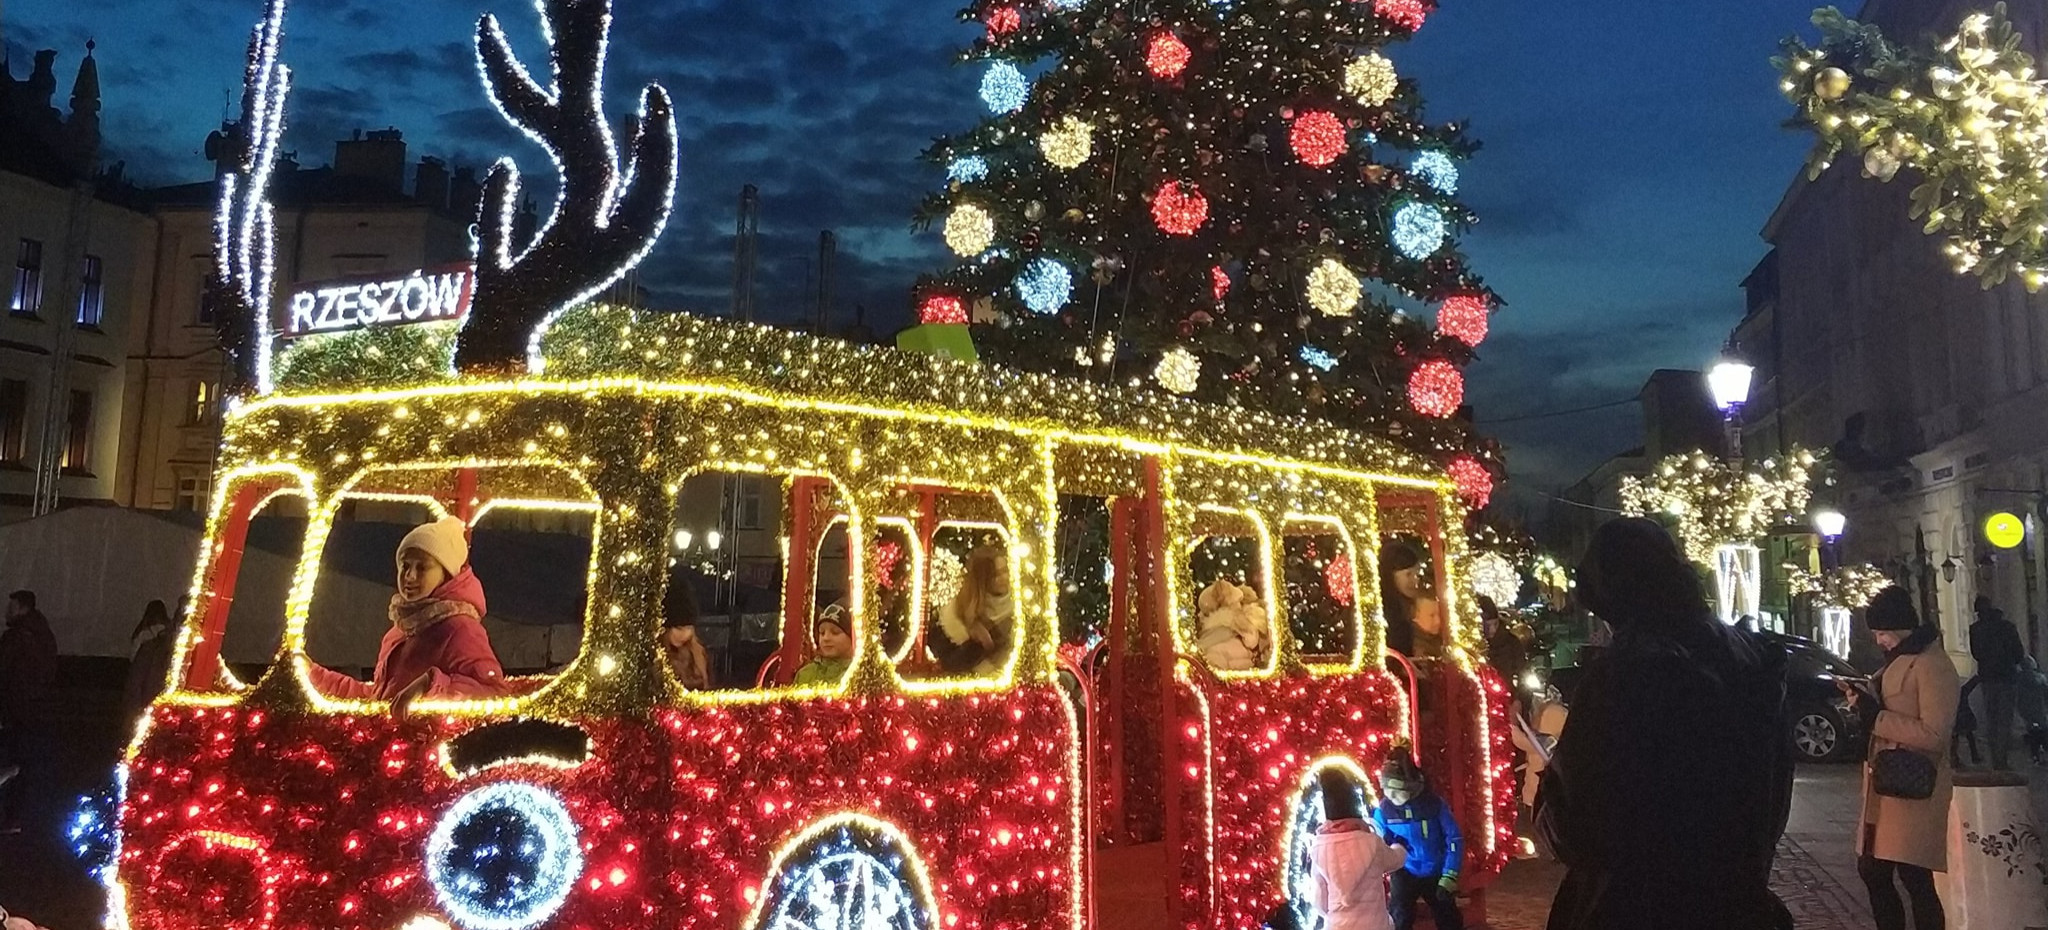 RZESZÓW. Miasto rozbłyśnie świątecznymi ozdobami za 700 tys. zł